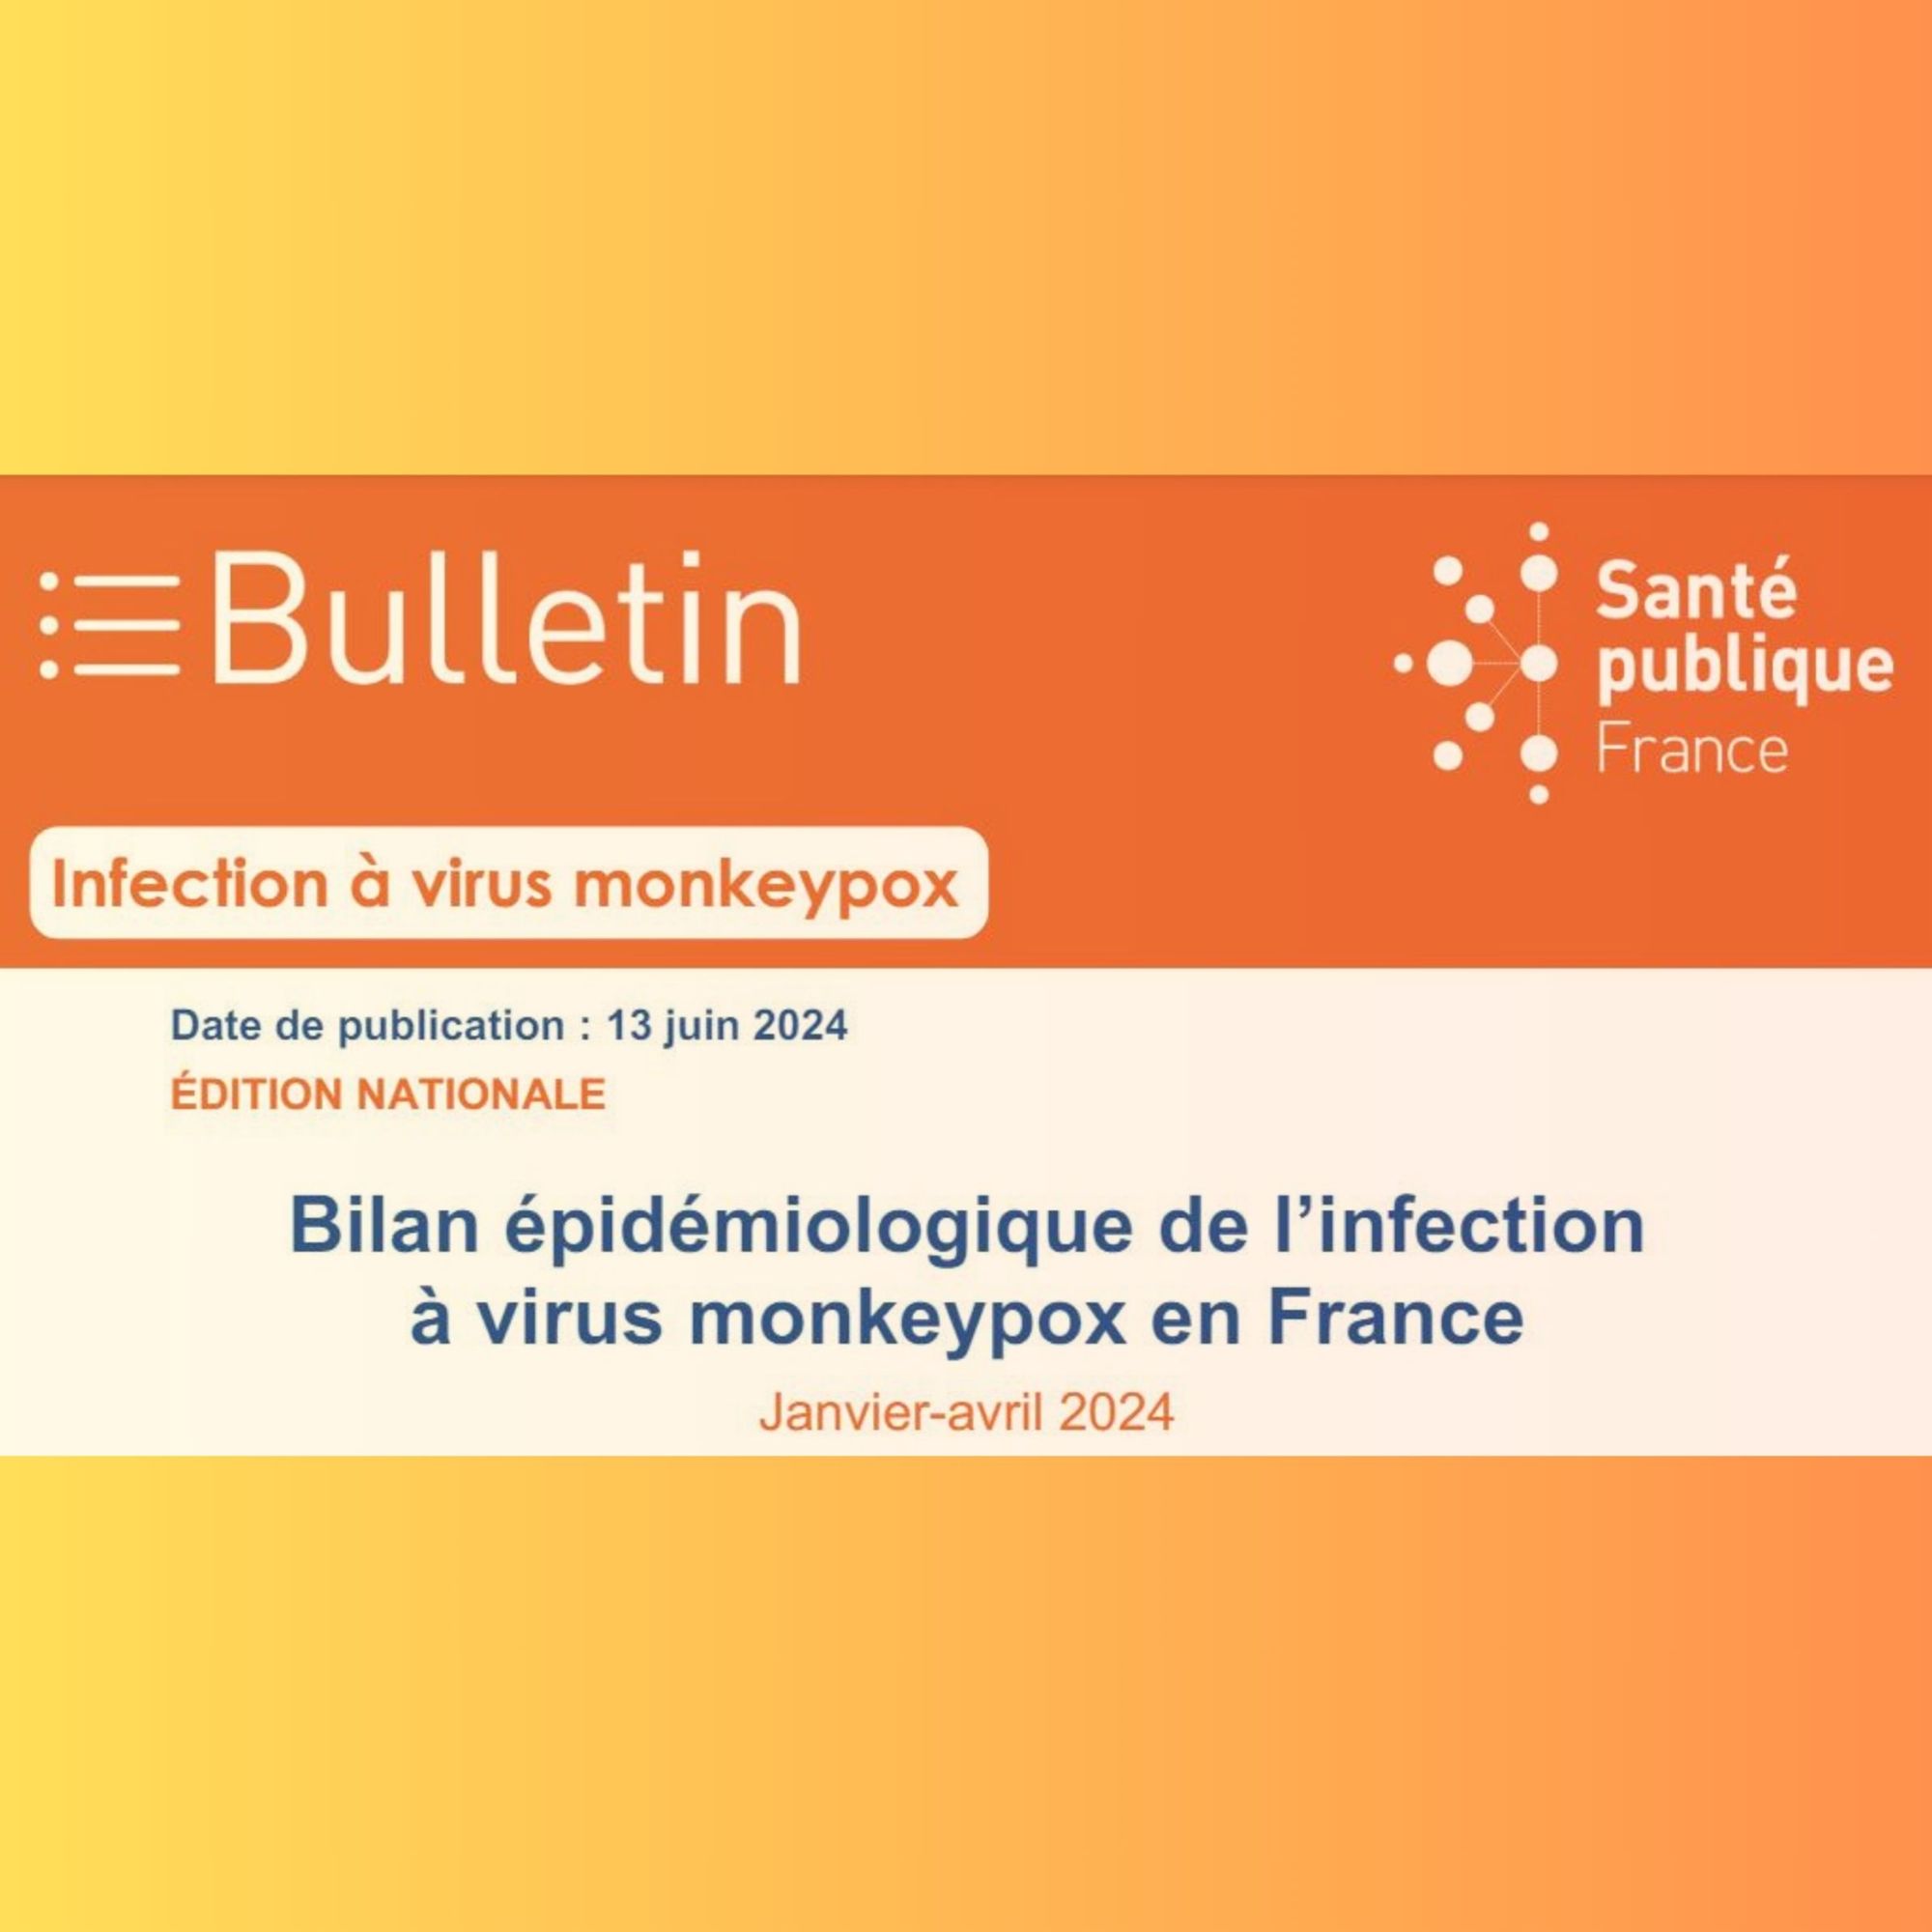 Infection à virus Monkeypox en France. 